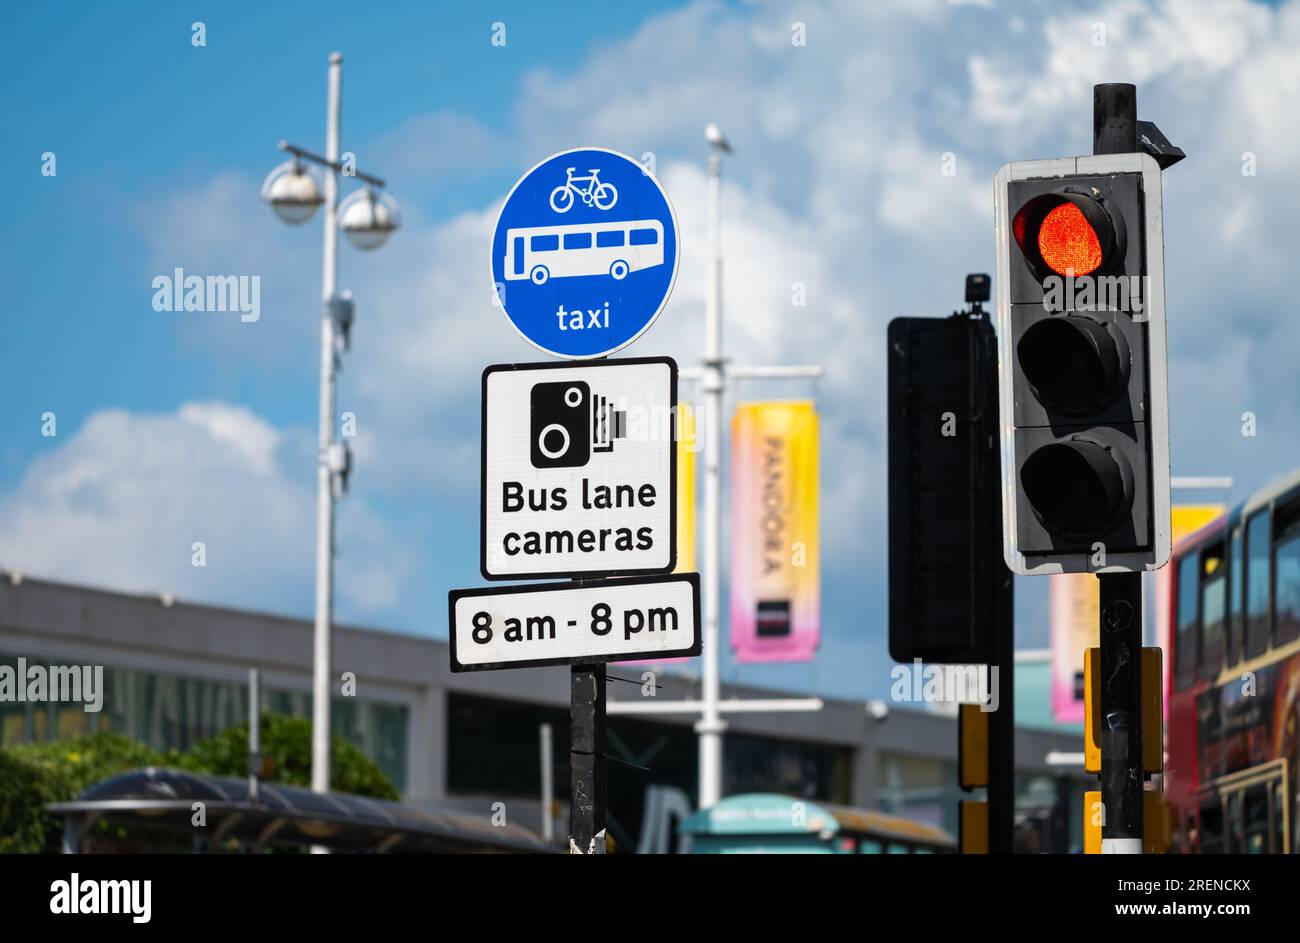 Schilder und Ampeln an der Kreuzung, die Busspur, Fahrradspur, Taxispur, Warnung vor Fahrspurkameras zeigen, in Brighton & Hove, England, Großbritannien. Stockfoto